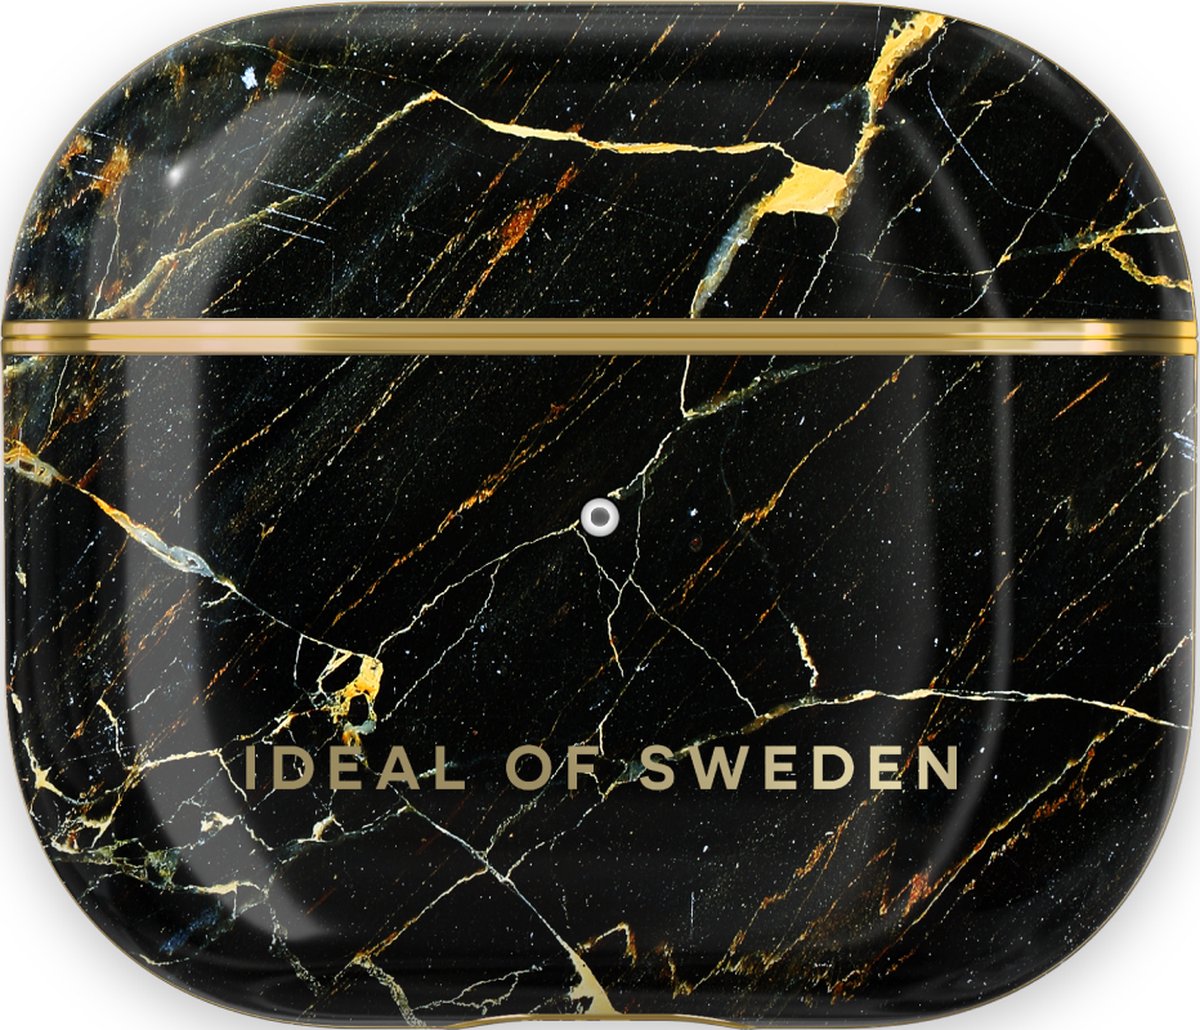 iDeal of Sweden AirPods Case Print Gen 3 Port Laurent